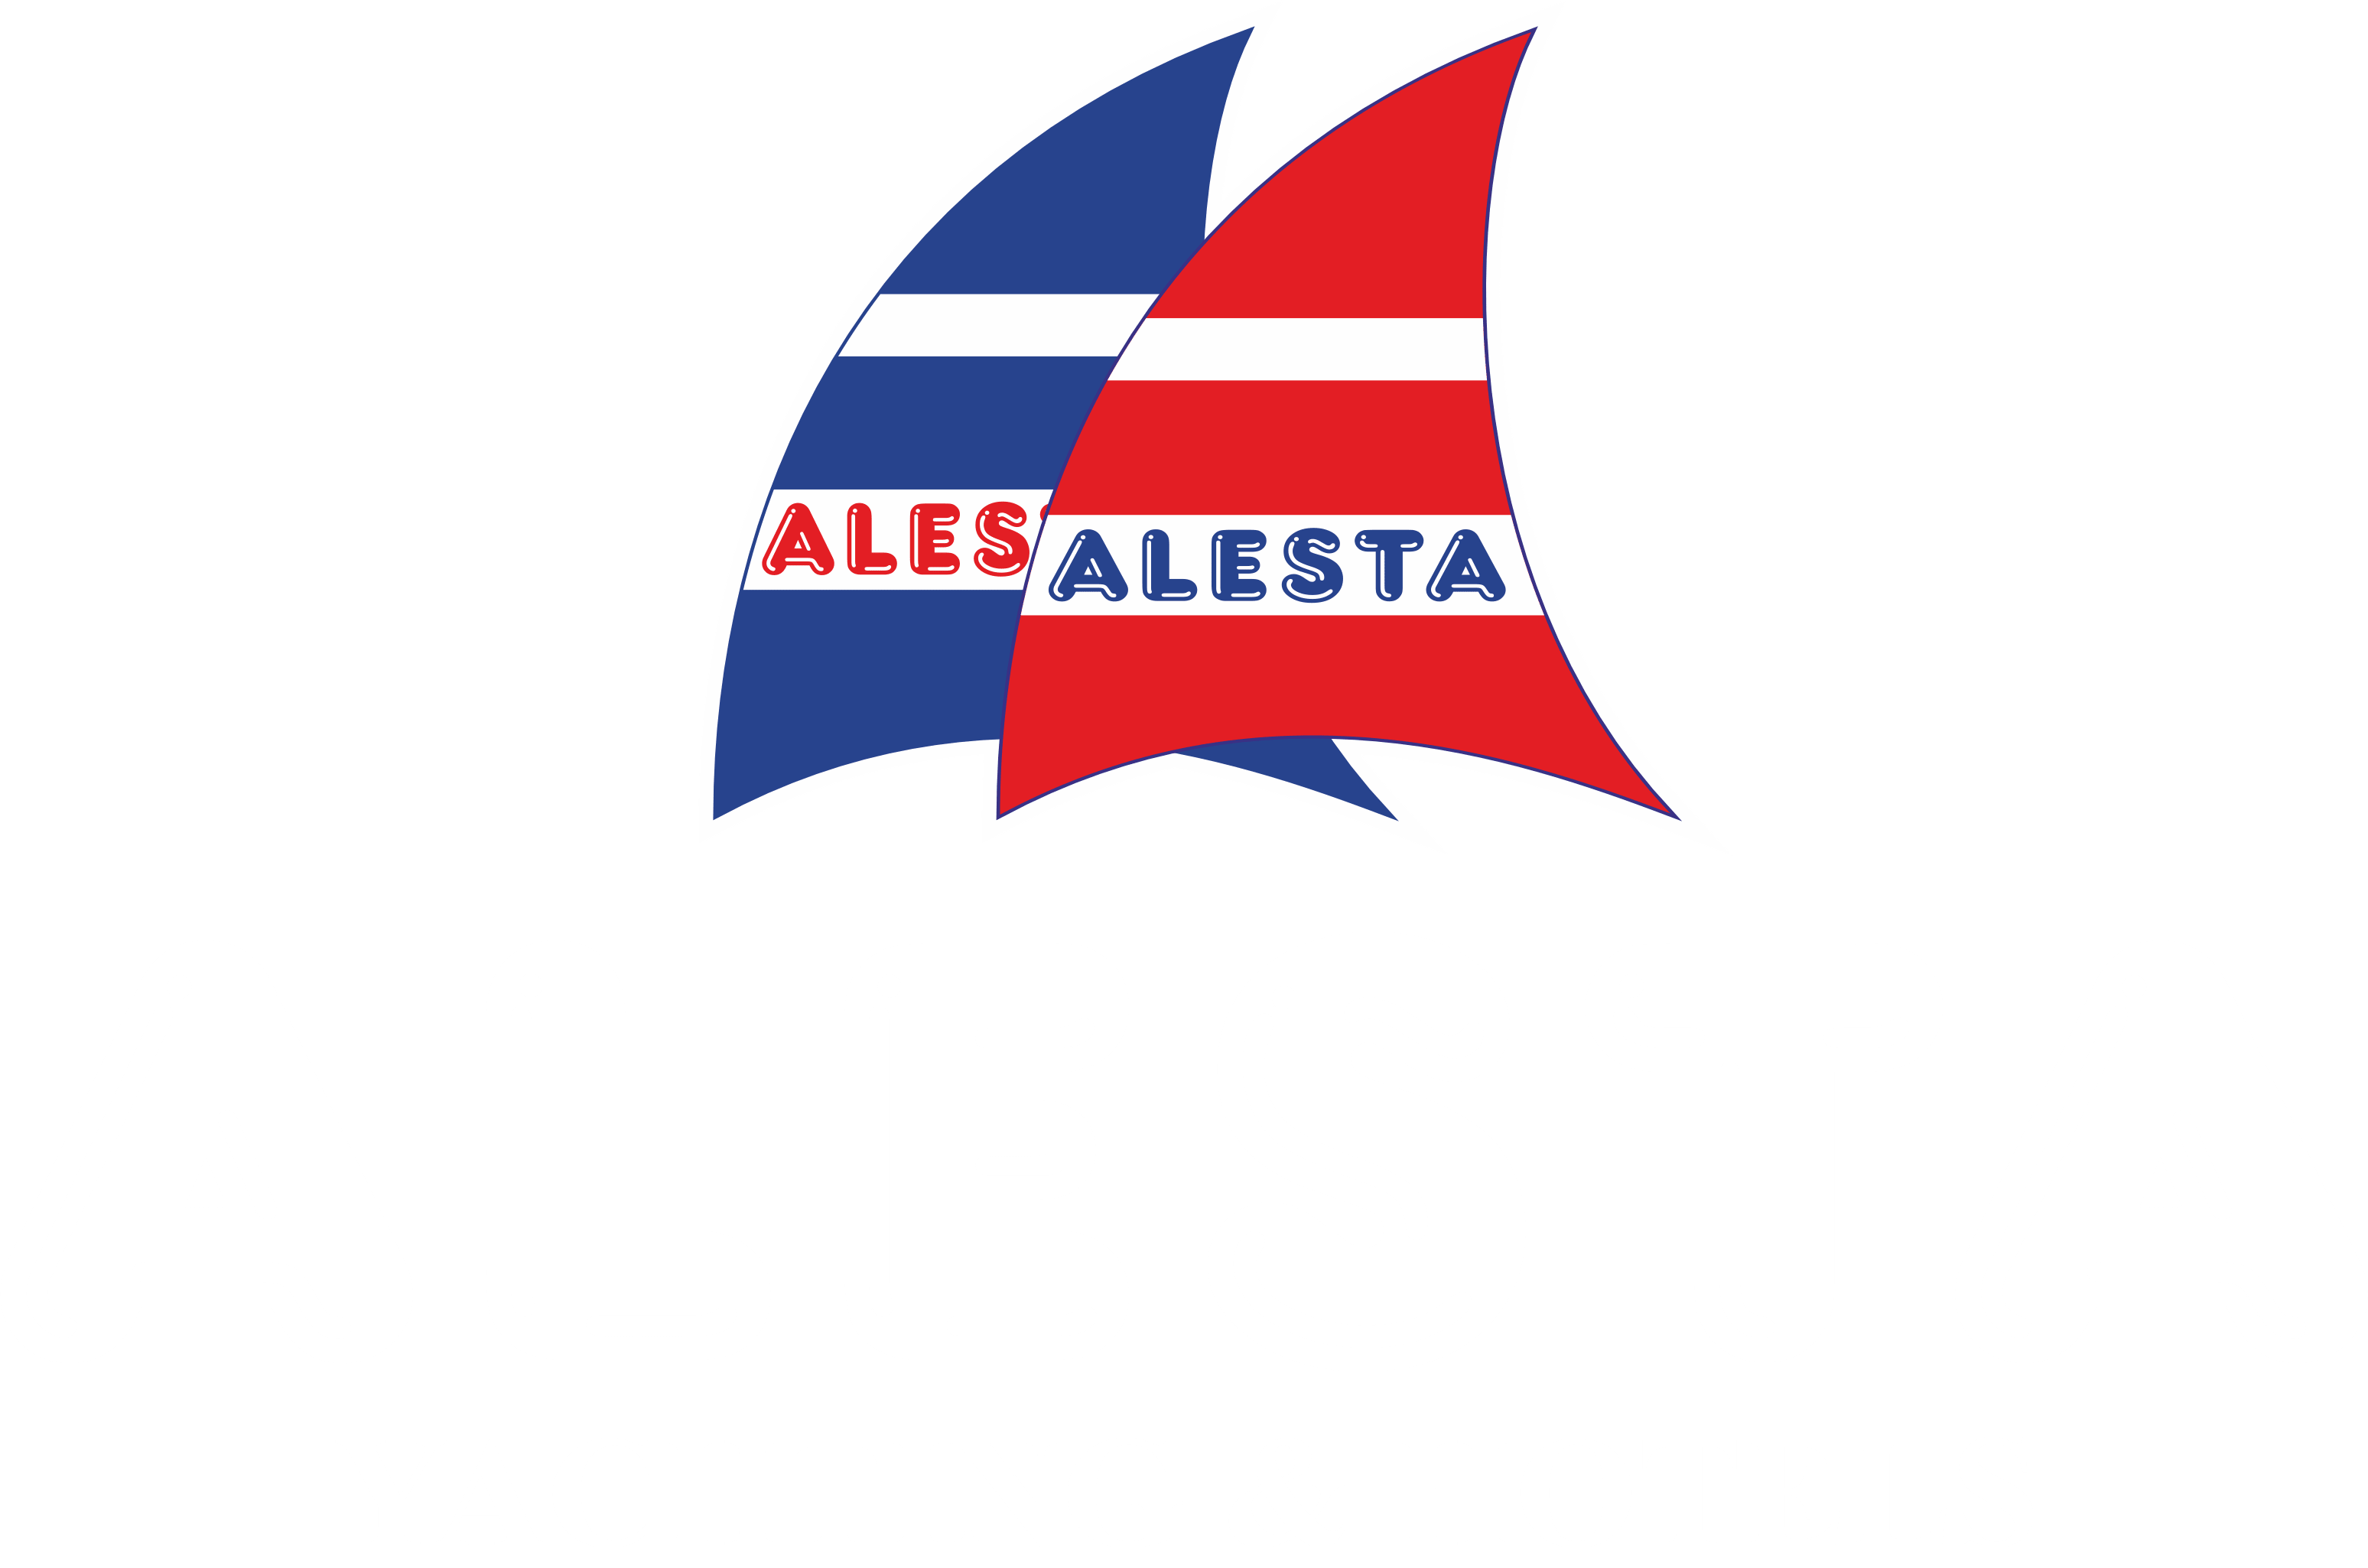 Fethiye Yat Kiralama | Alesta Yachting | Fethiye Yacht Rental | About us - Fethiye Yat Kiralama | Alesta Yachting | Fethiye Yacht Rental